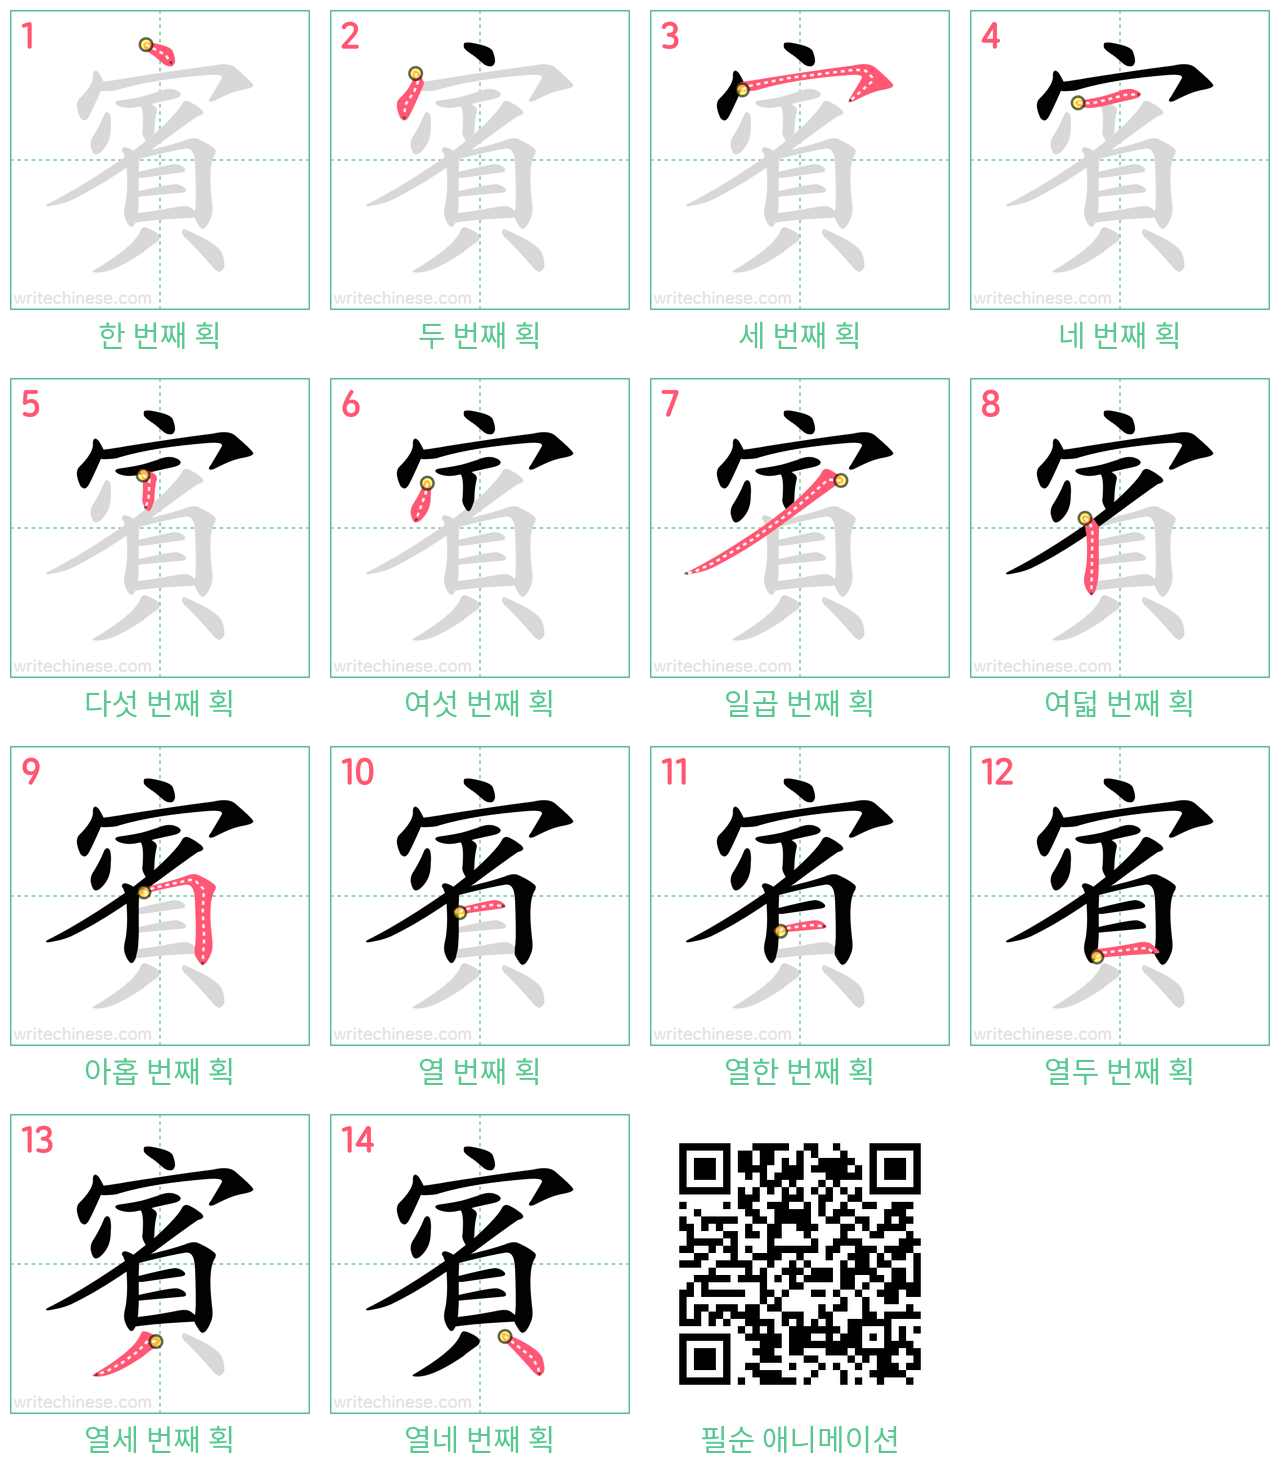 賓 step-by-step stroke order diagrams